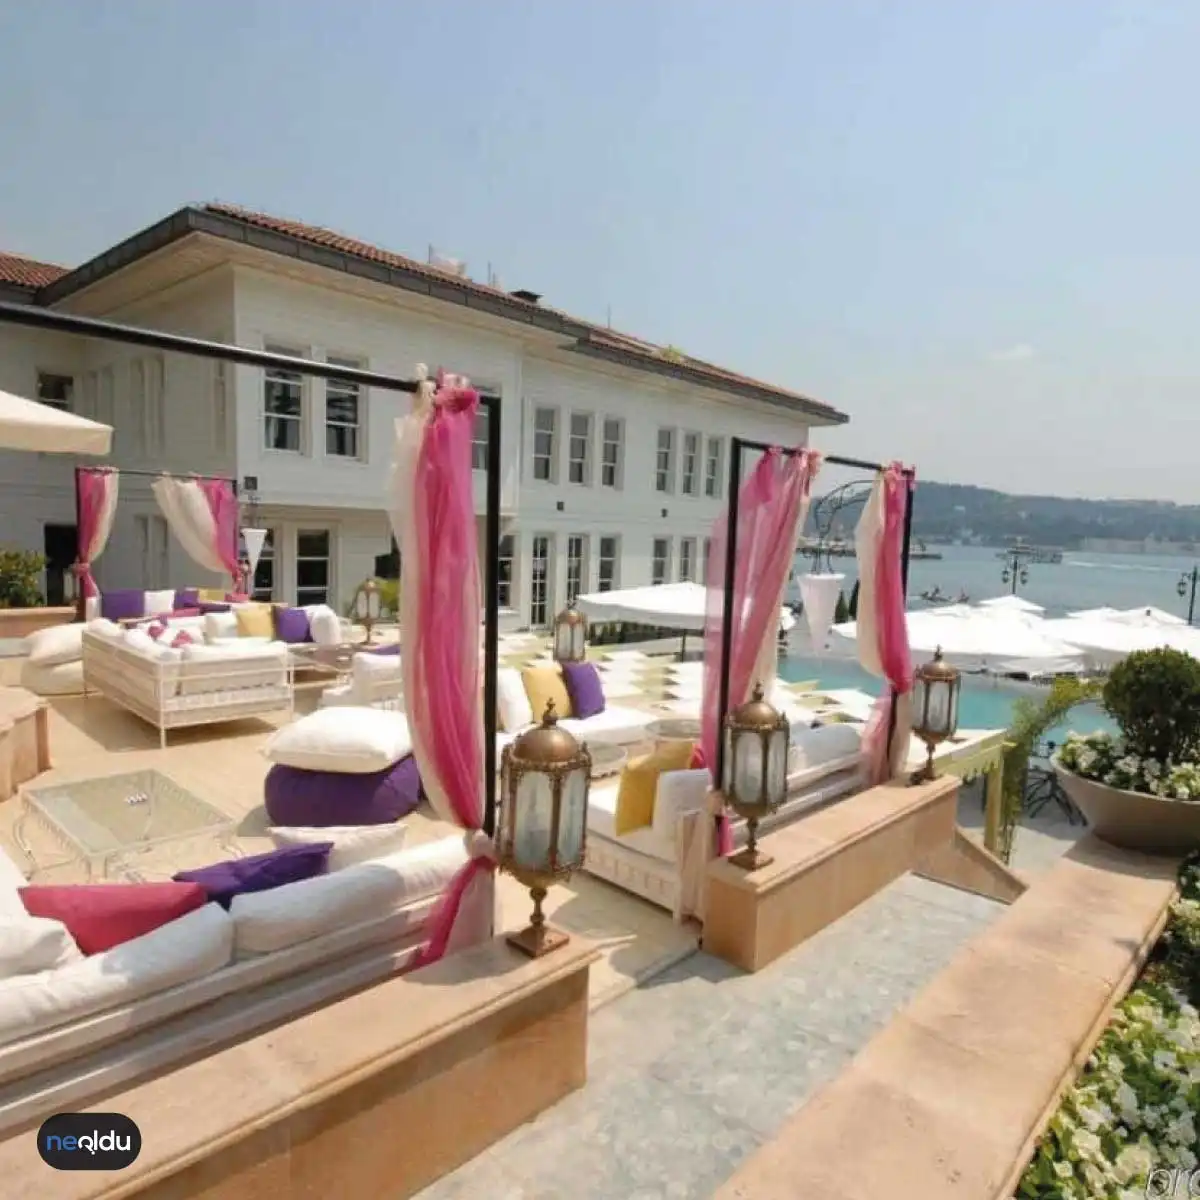 İstanbul'un en iyi otelleri